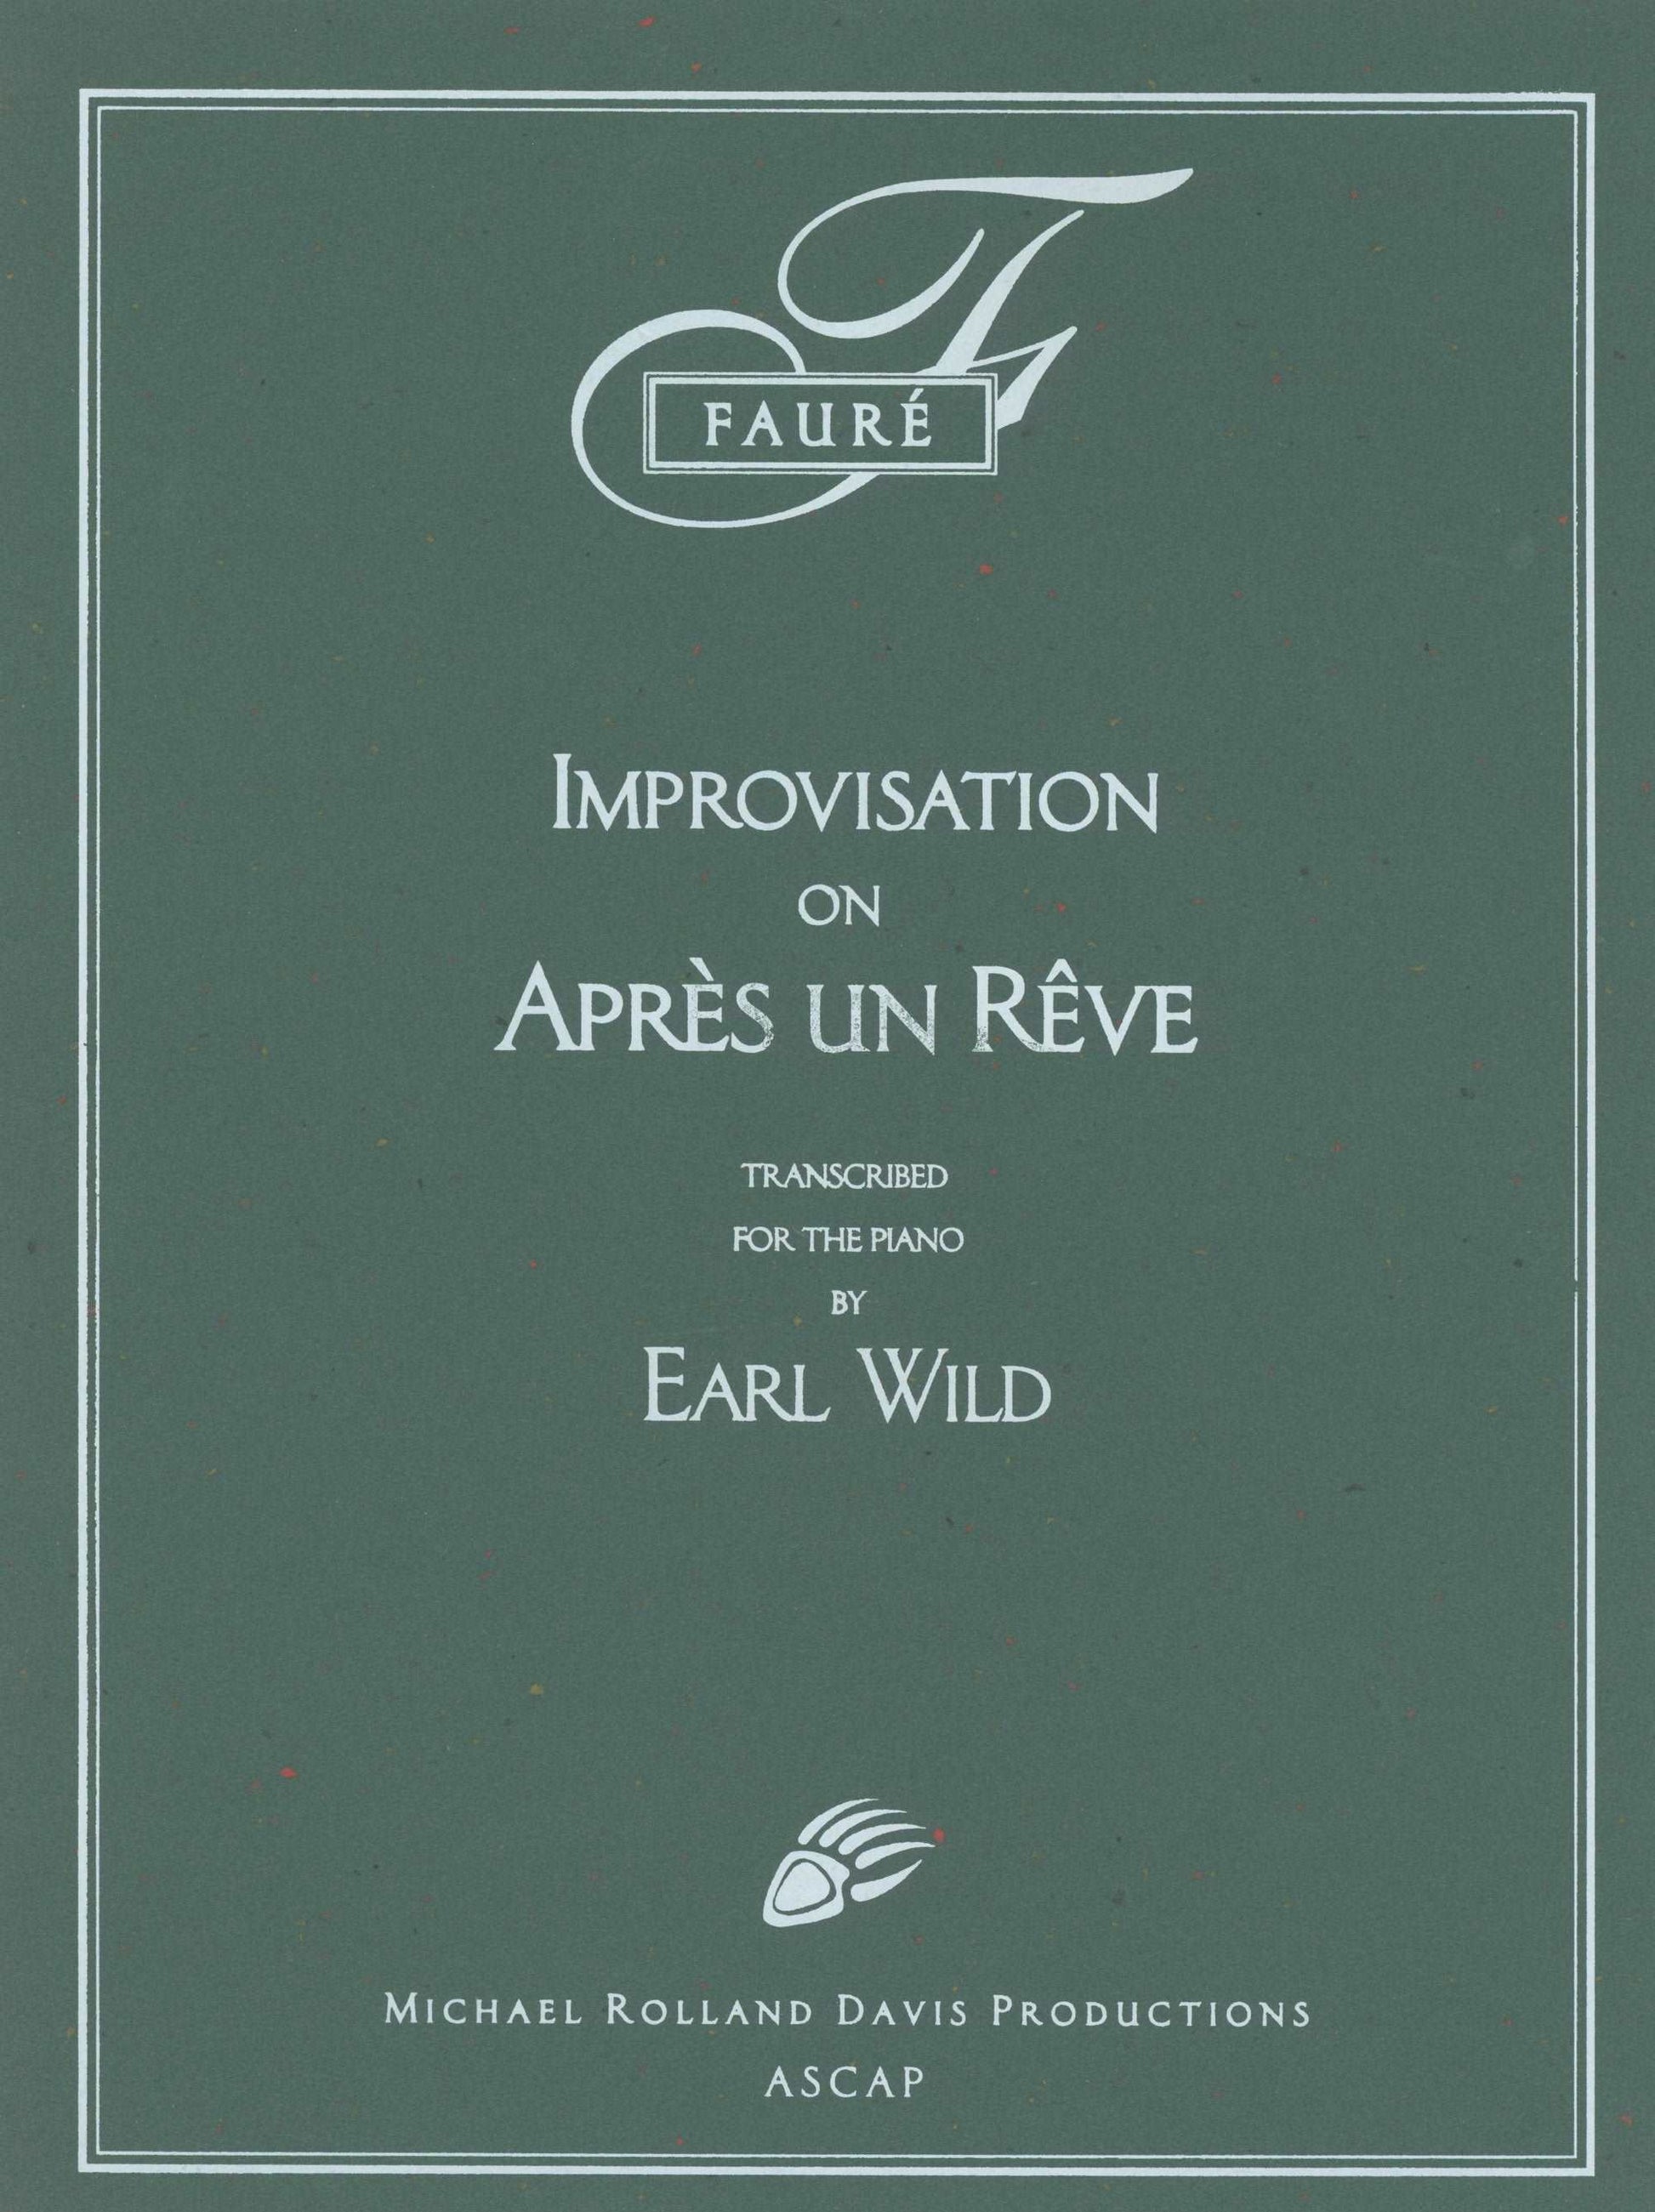 Earl Wild: Improvisation on Faure's song ‘Après un Rêve’